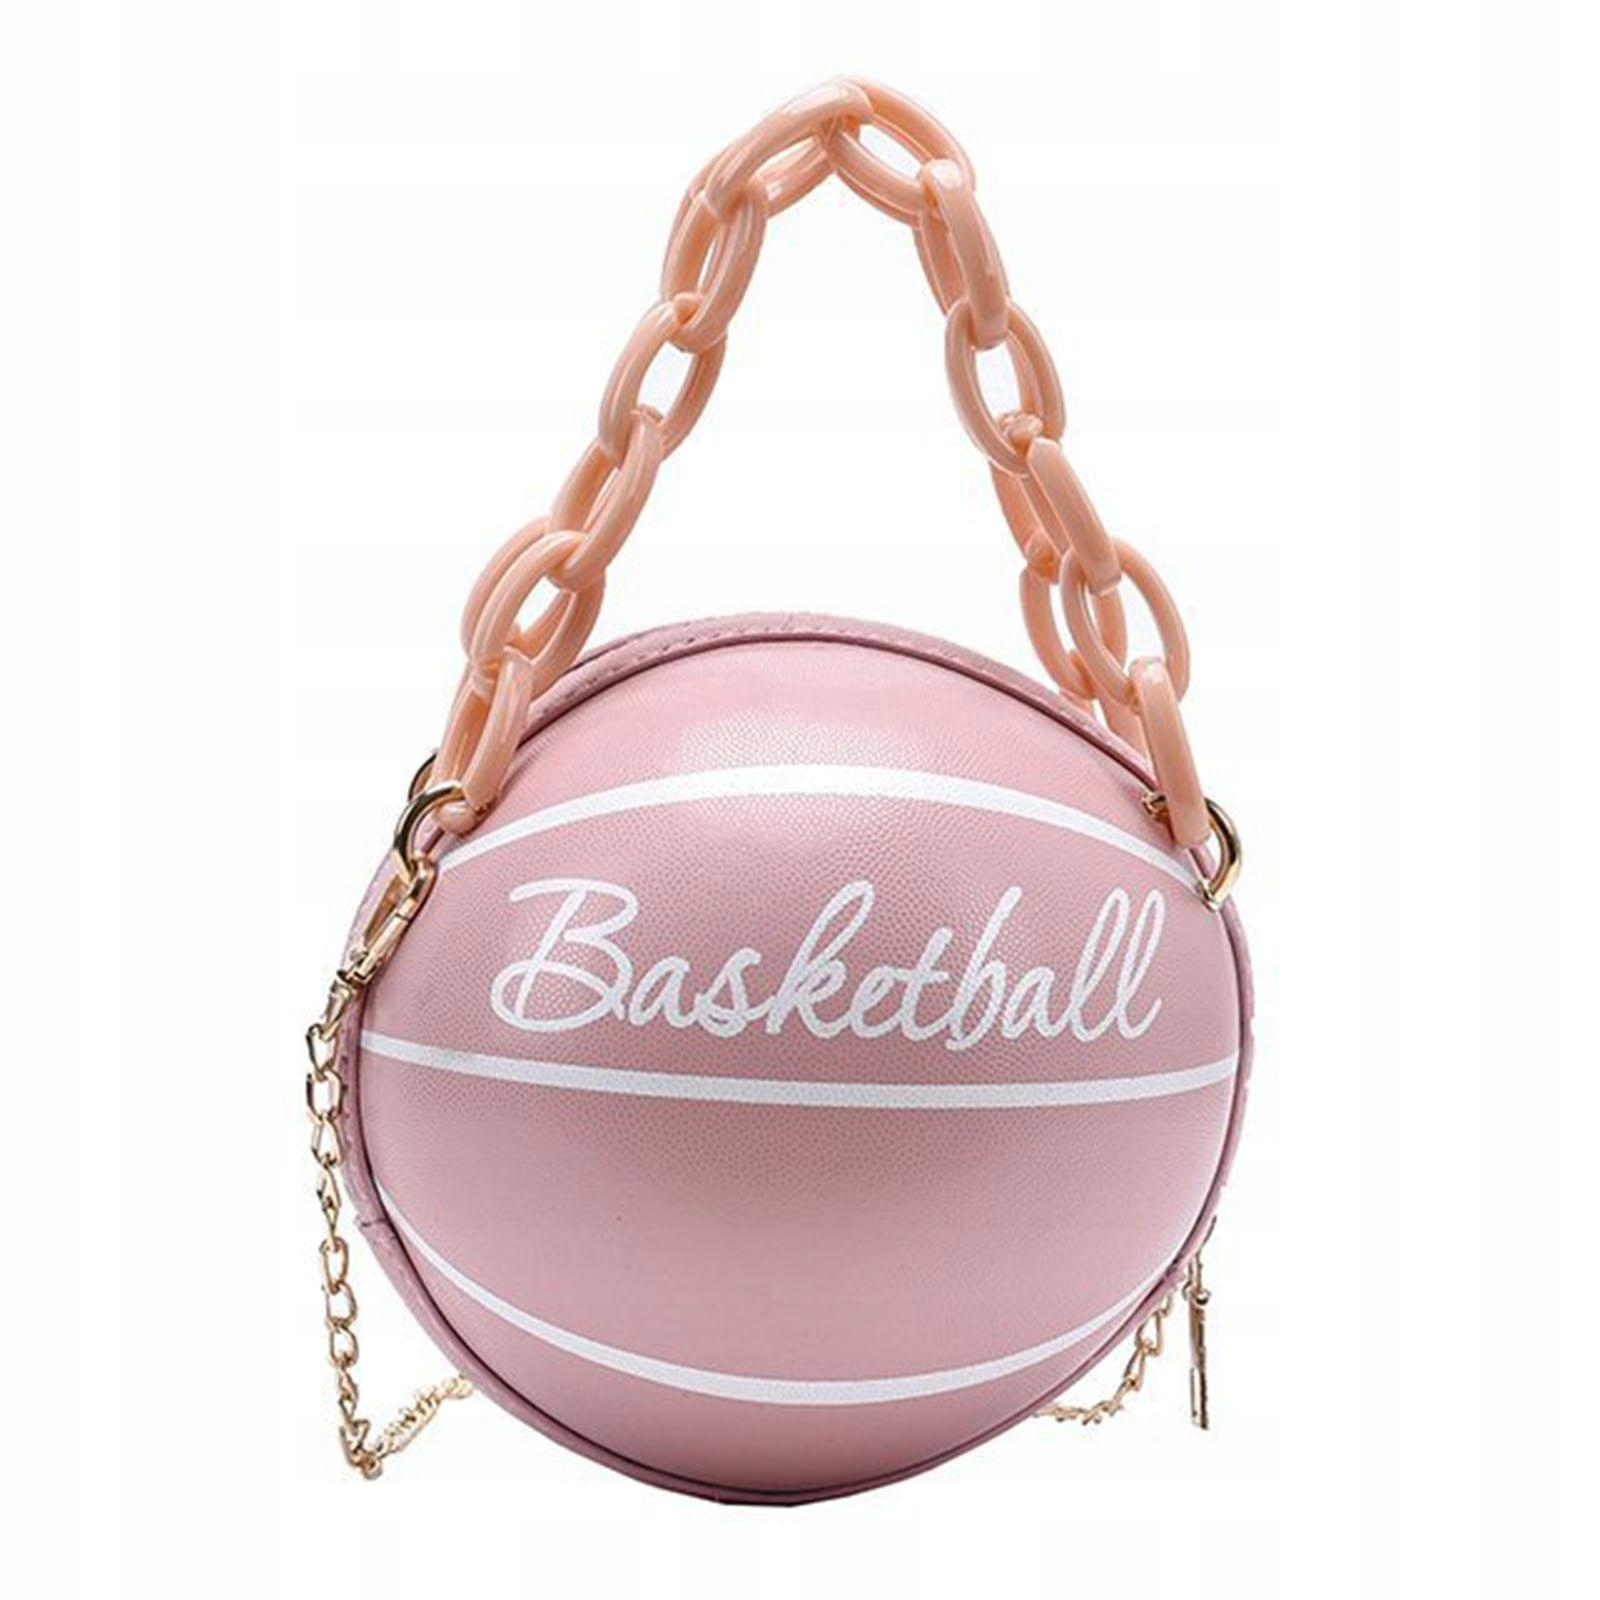 Novinka Dámska basketbalová taška PU Leather Chain Pink